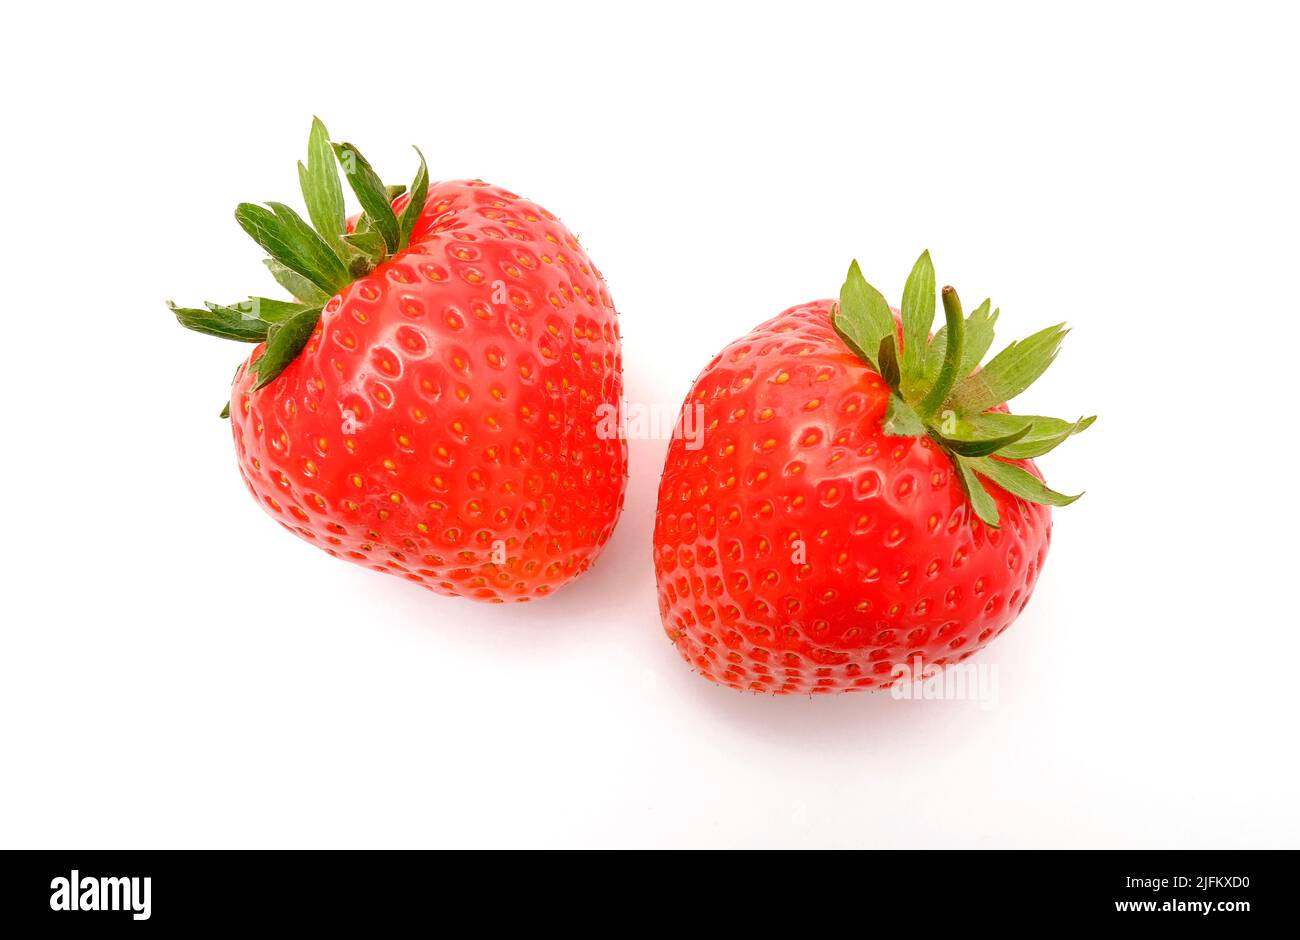 dos fresas rojas inglesas maduras sobre fondo blanco Foto de stock